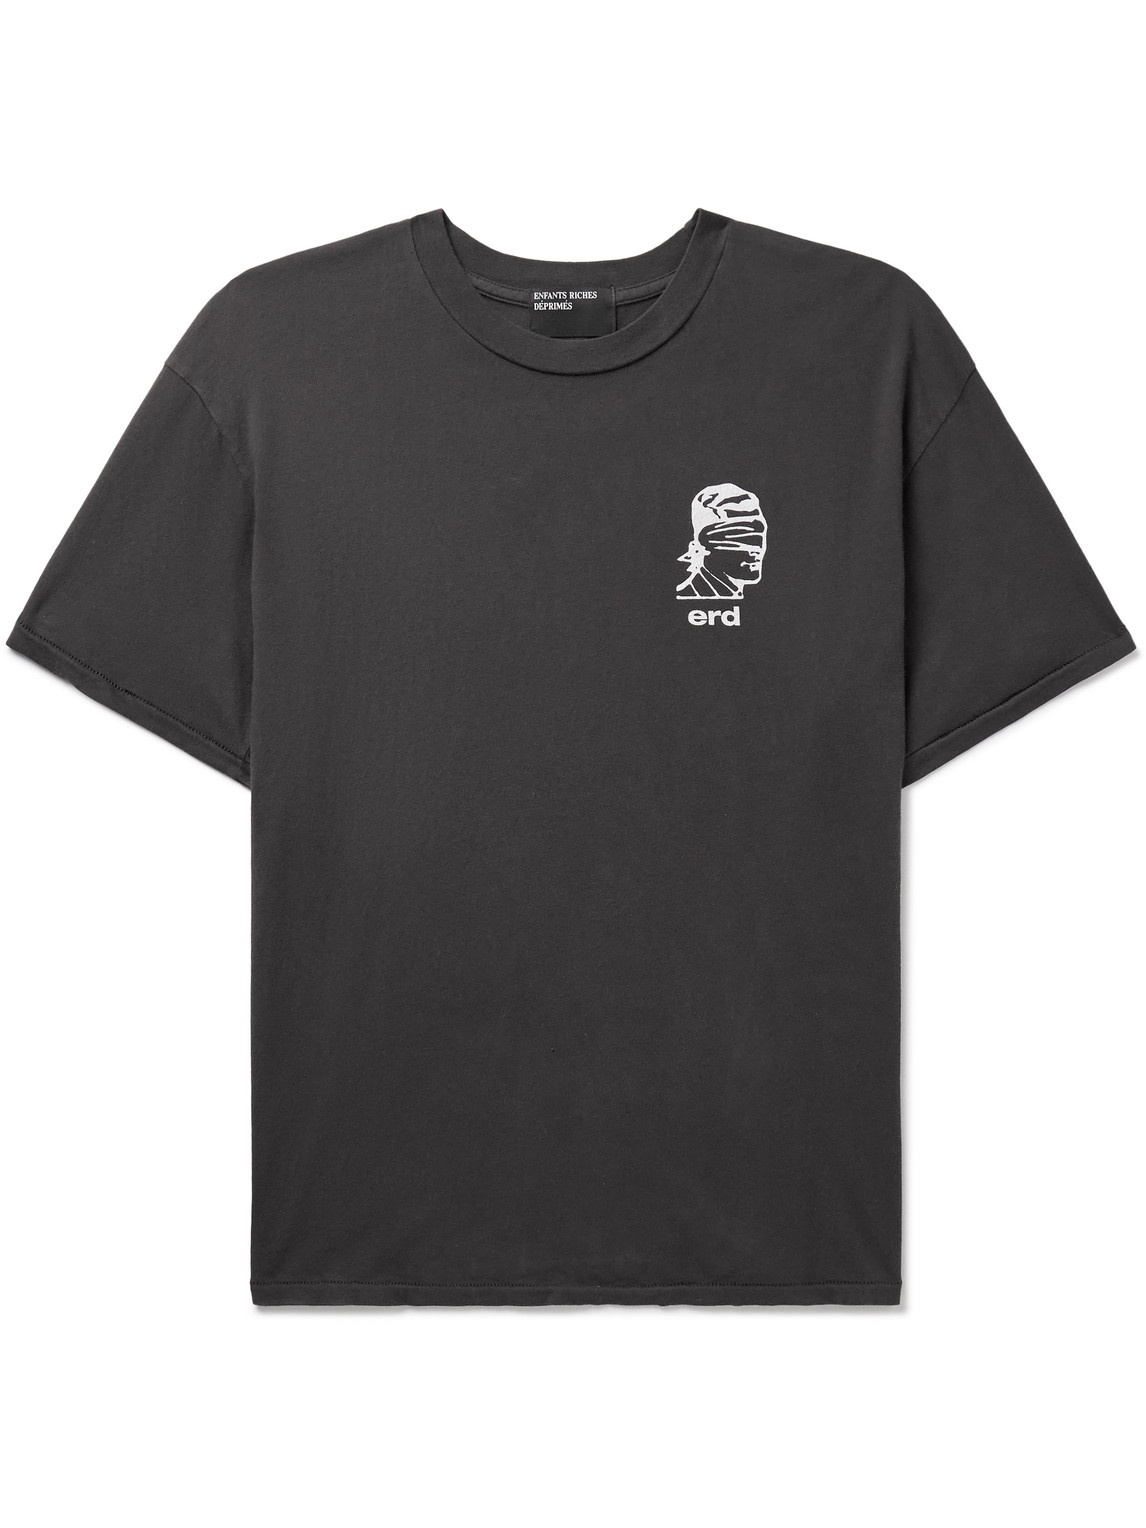 Enfants Riches Deprimes Black Bauhaus T-shirt In Black,white